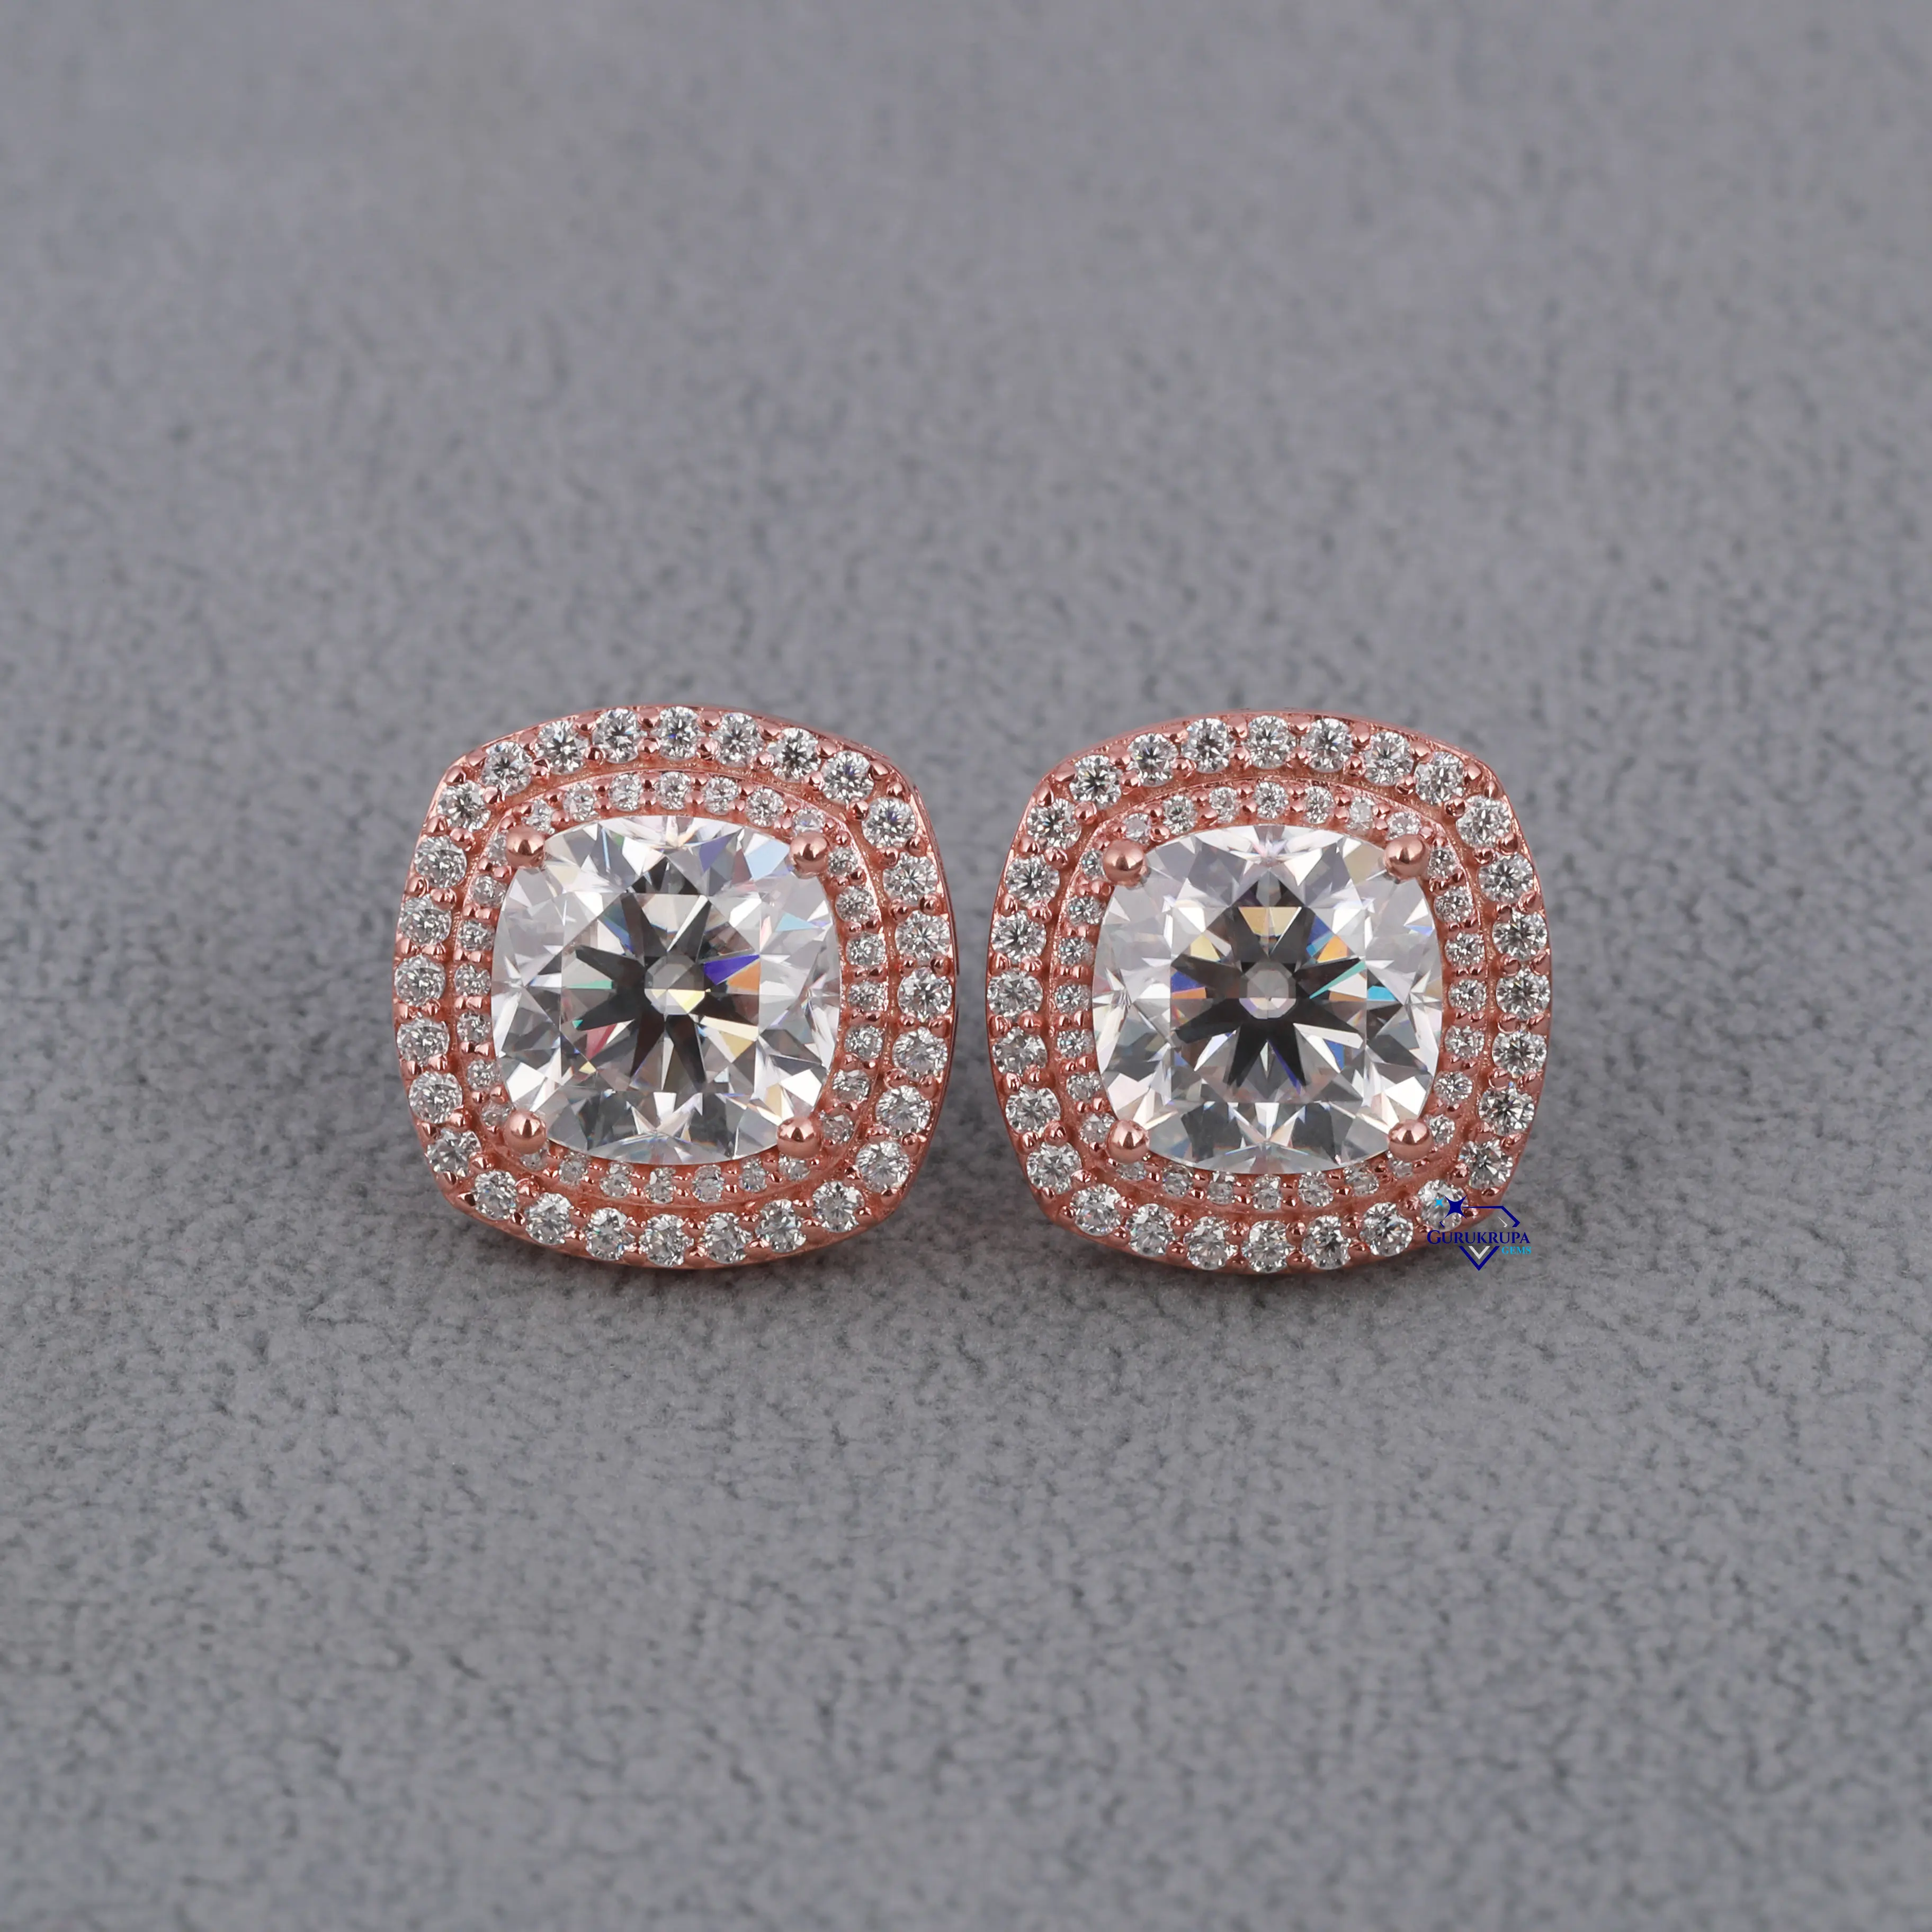 Di tendenza bellissimi orecchini con taglio a cuscino di ultima generazione realizzati in oro rosa 14kt con collezione all'ingrosso di diamanti moissanite